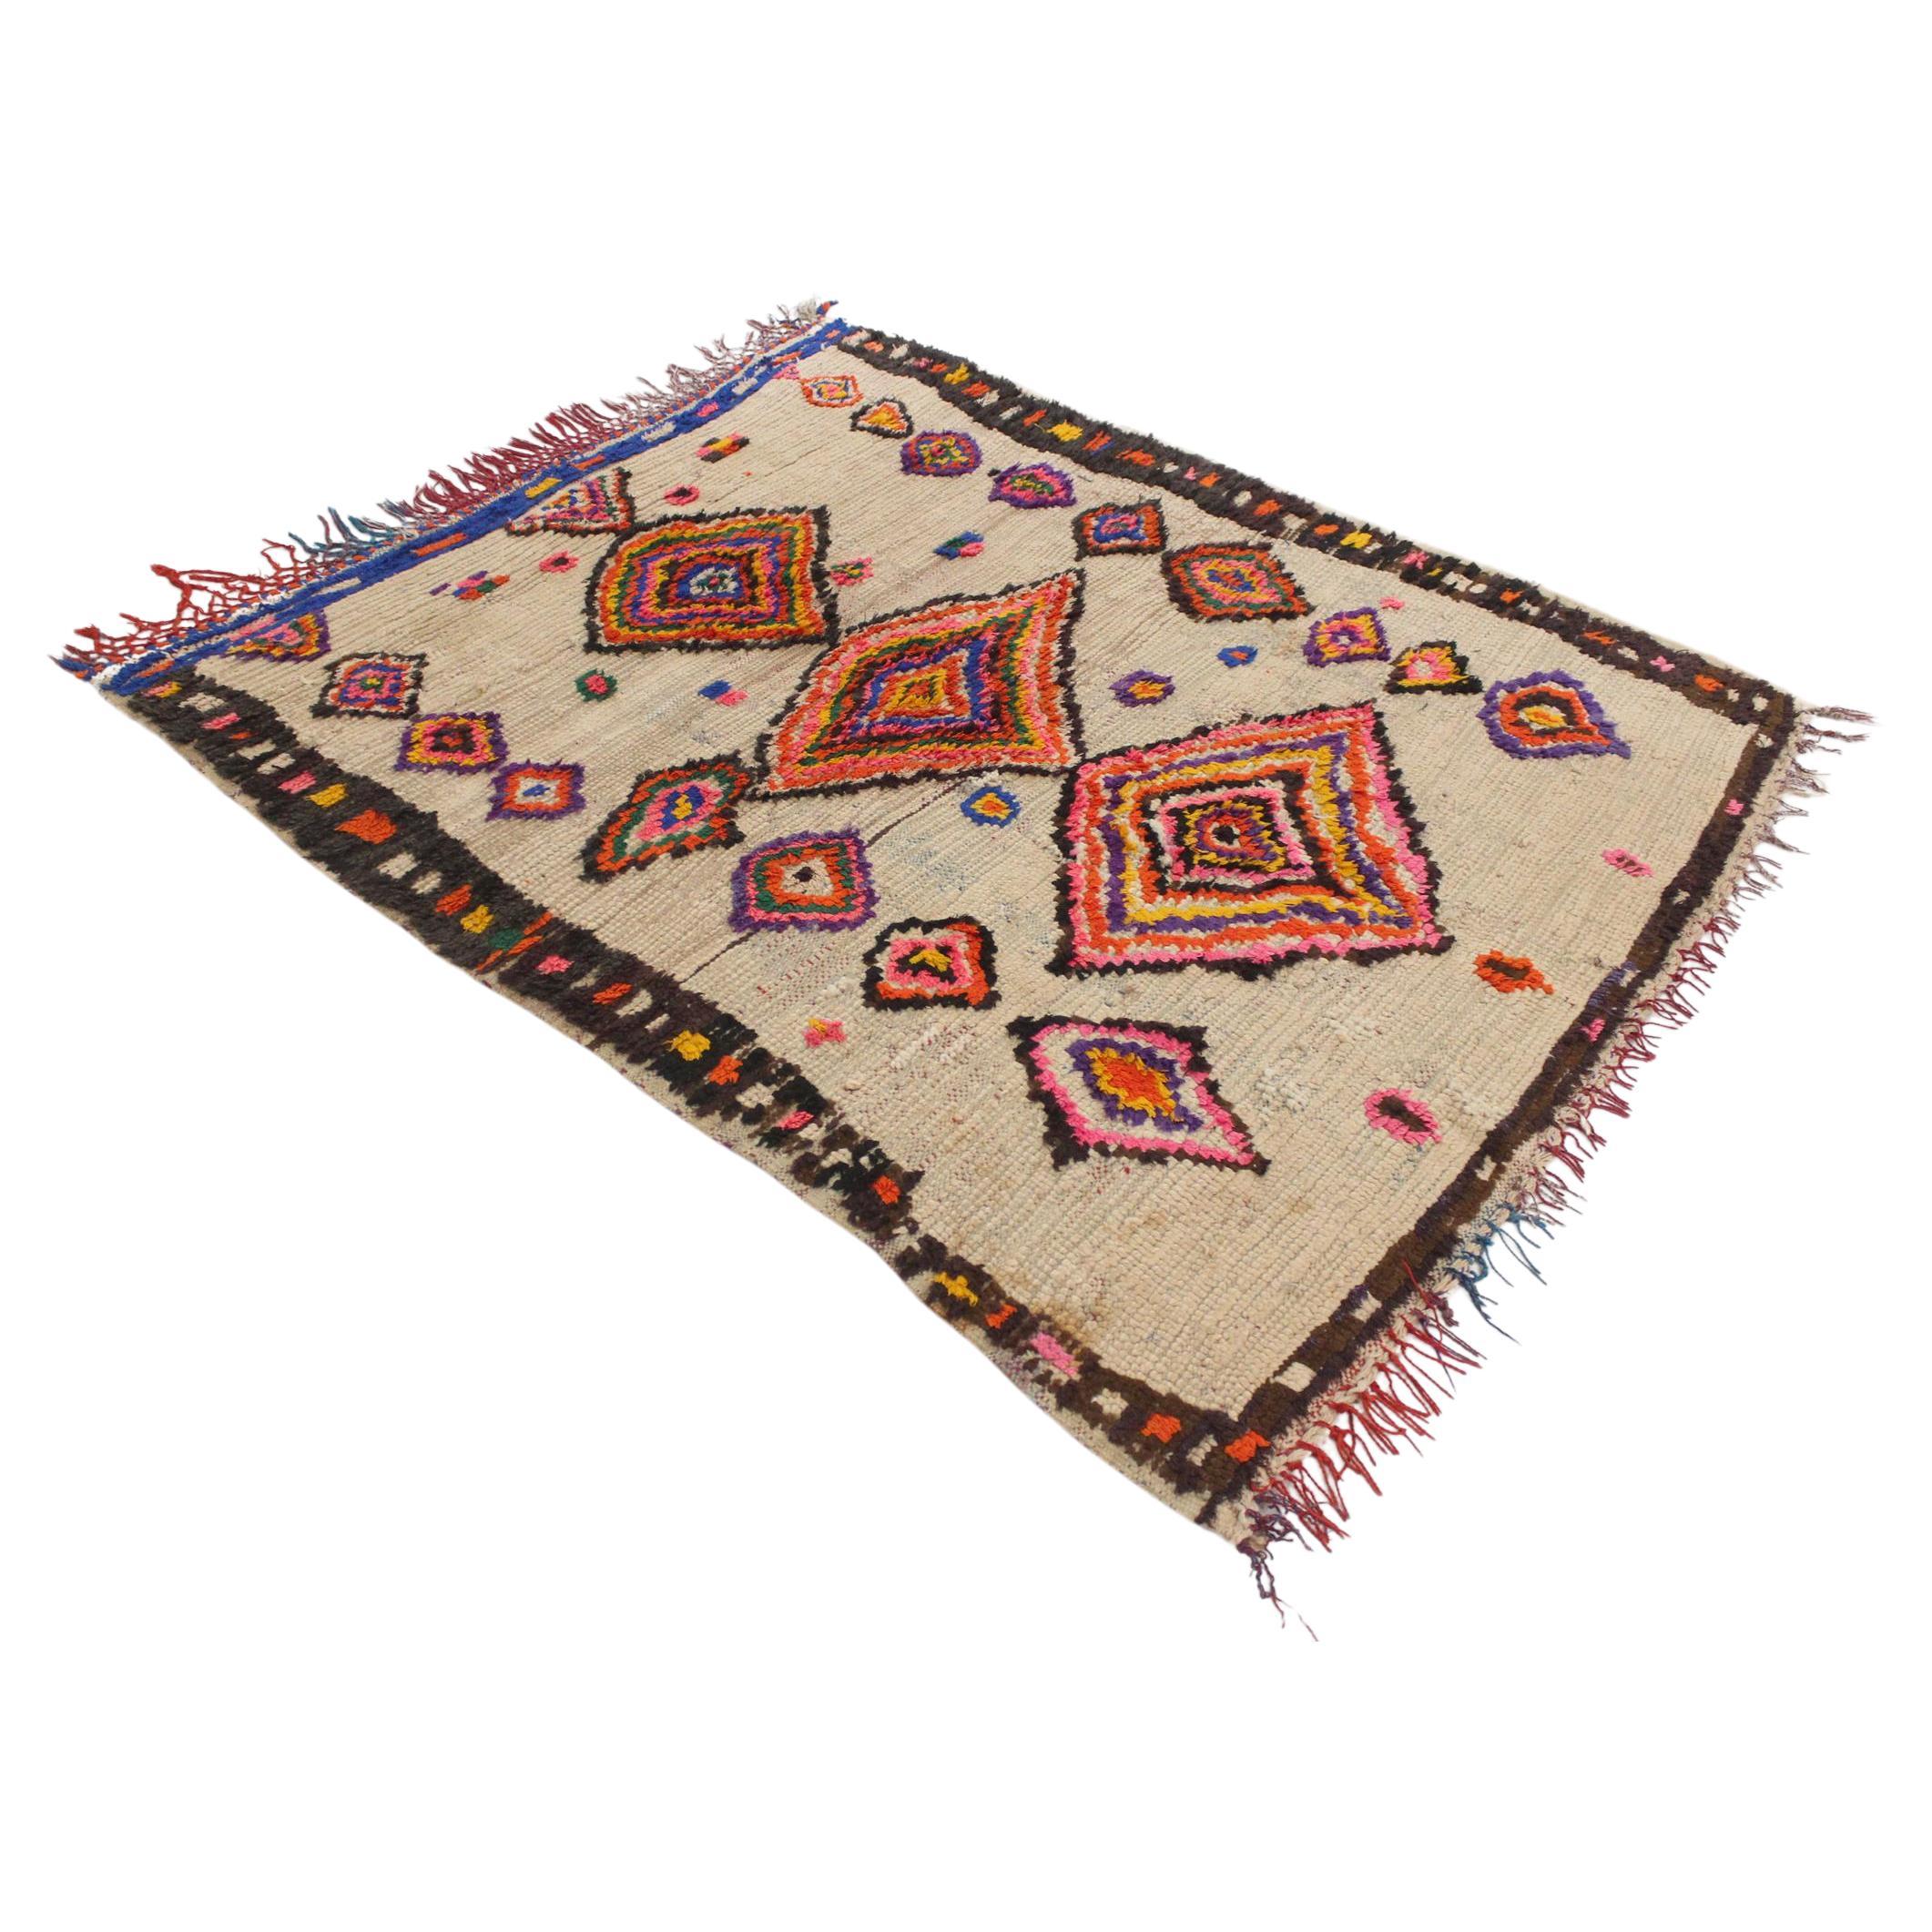 Vintage Moroccan Azilal rug - Multicolor - 4.7x5.4feet / 144x164cm